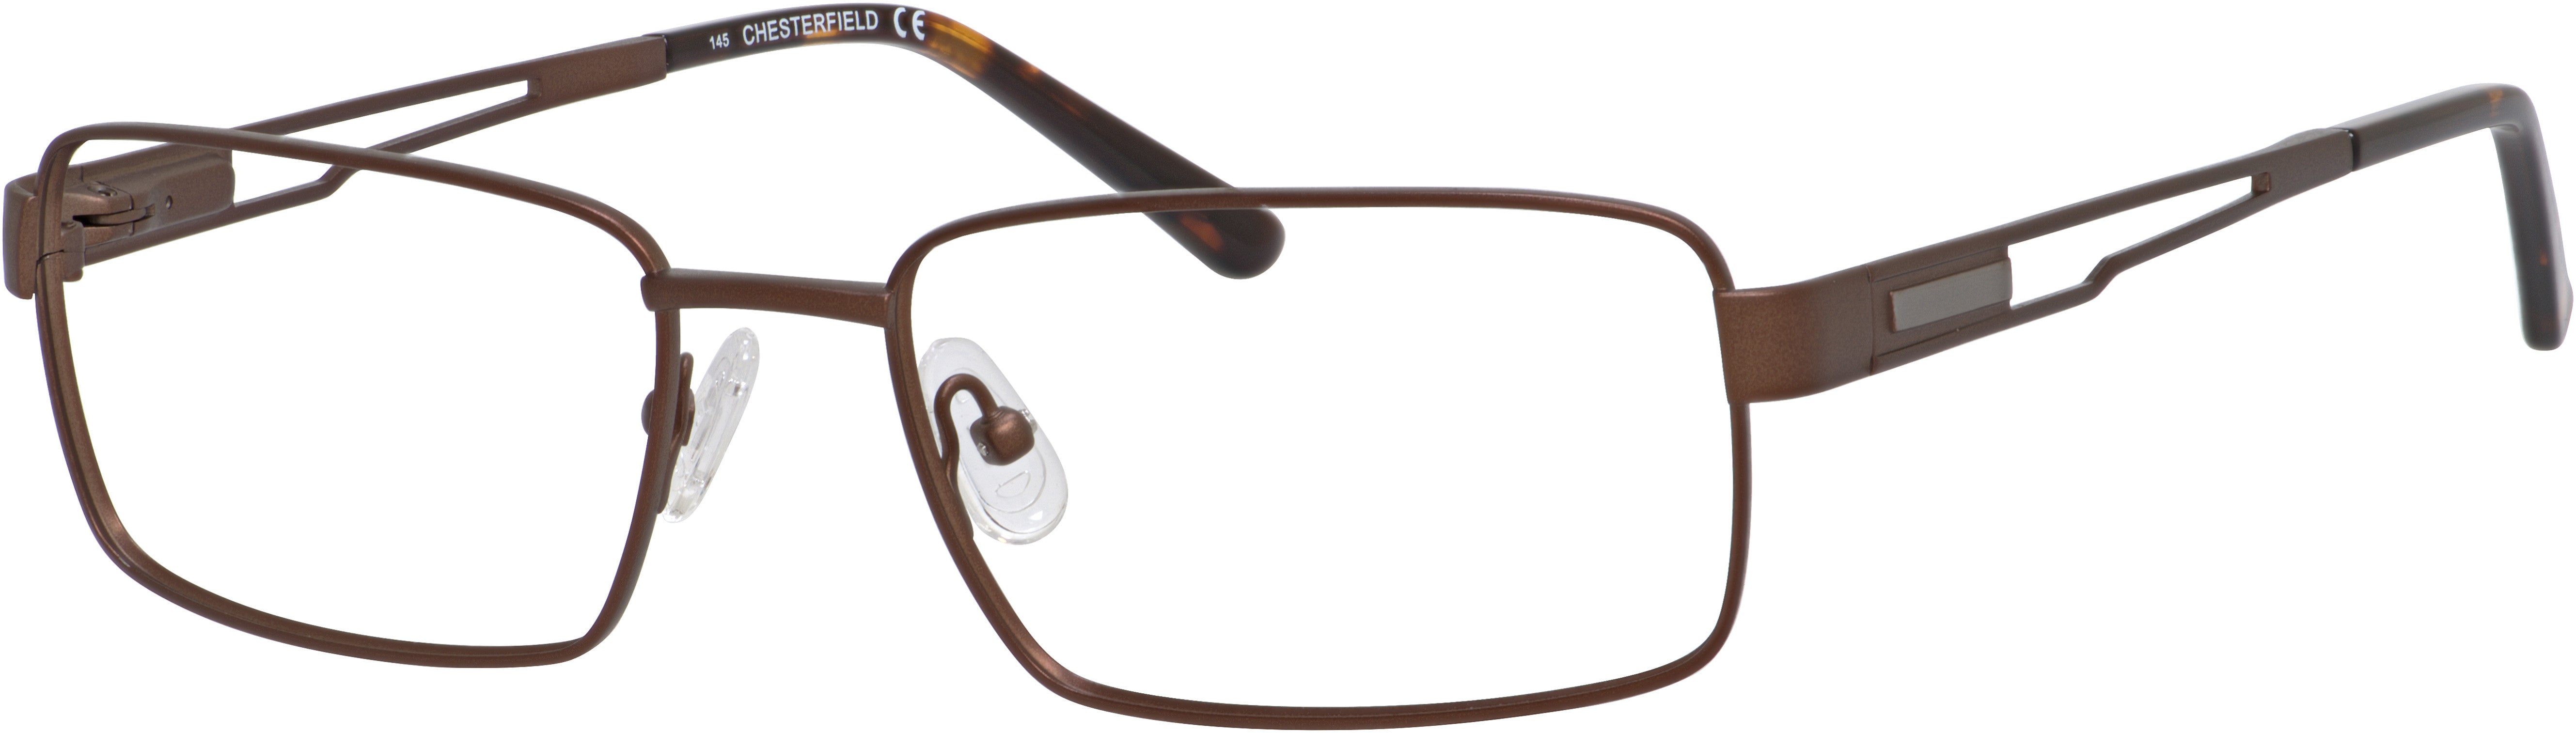  Chesterfield 879/T Rectangular Eyeglasses 0E62-0E62  Brushed Brown Brown (00 Demo Lens)